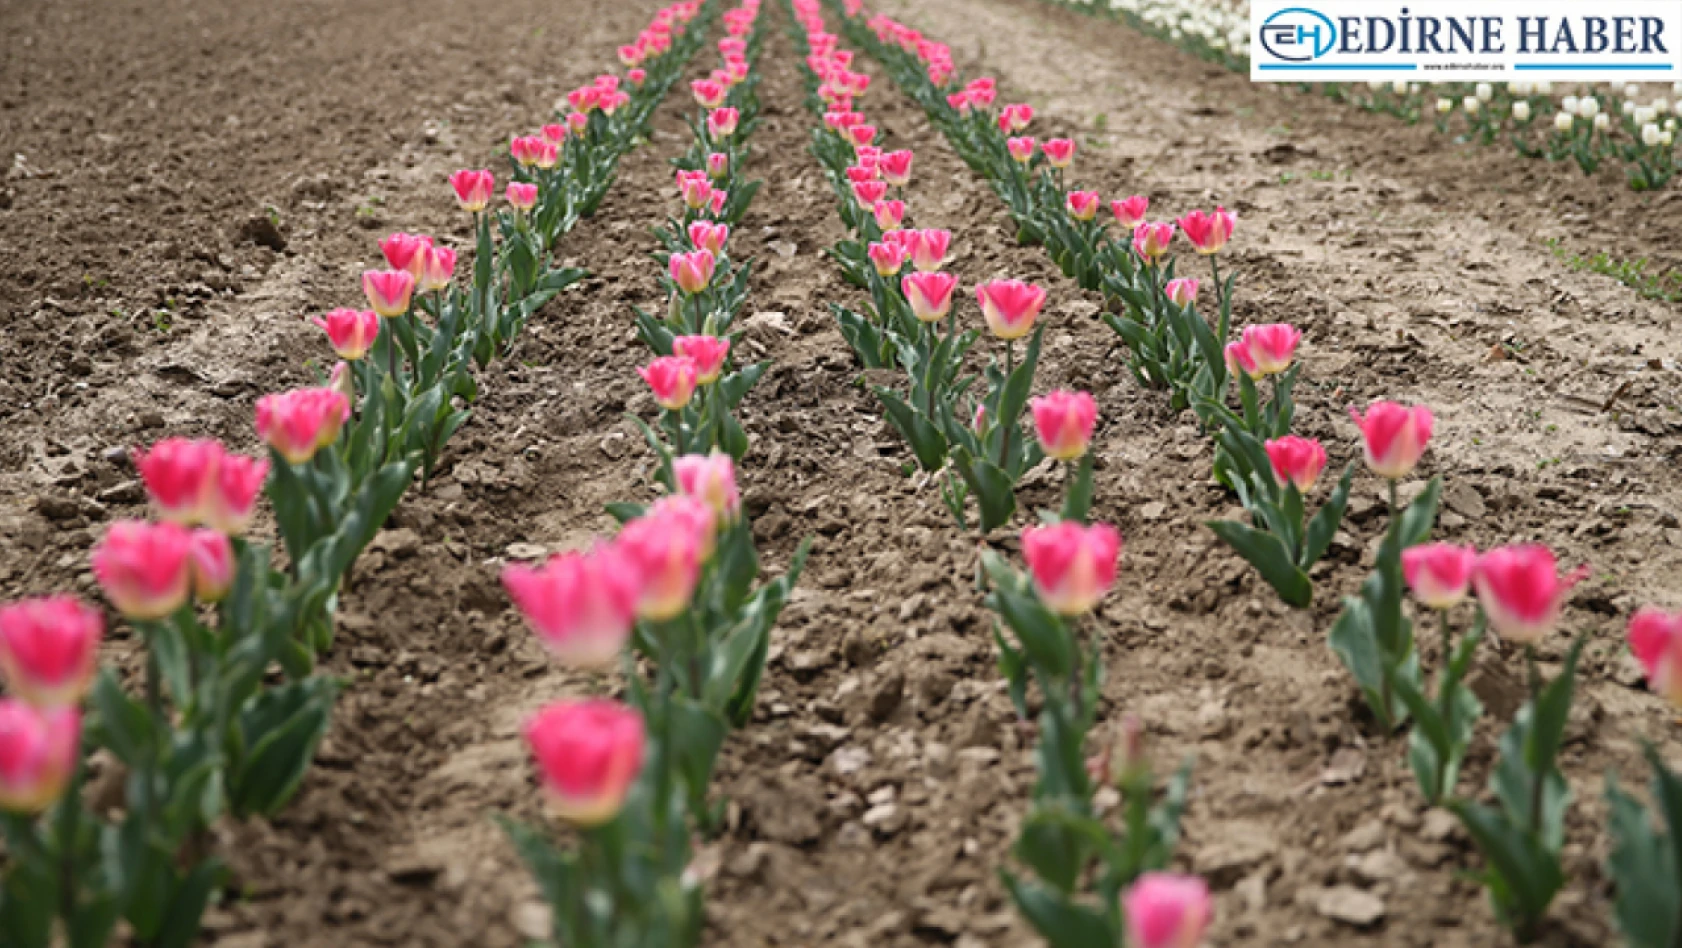 Lale, sümbül ve nergis gibi çiçek soğanlarının yetiştiriciliğinin Edirne'de yaygınlaştırılması hedefleniyor